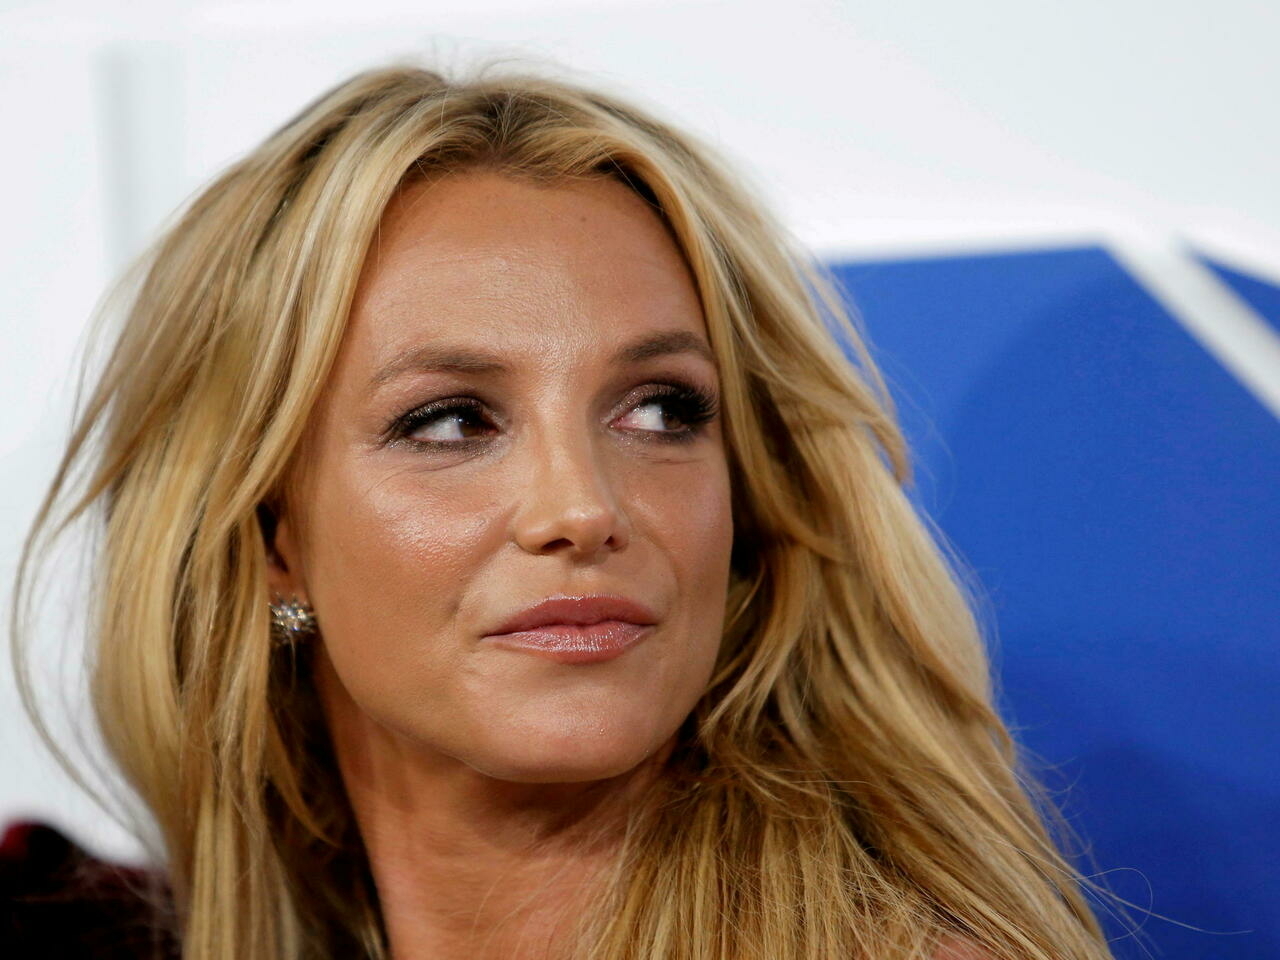 “He tenido que jugar a ser adulta toda mi vida”: Britney Spears envió un contundente mensaje a su familia